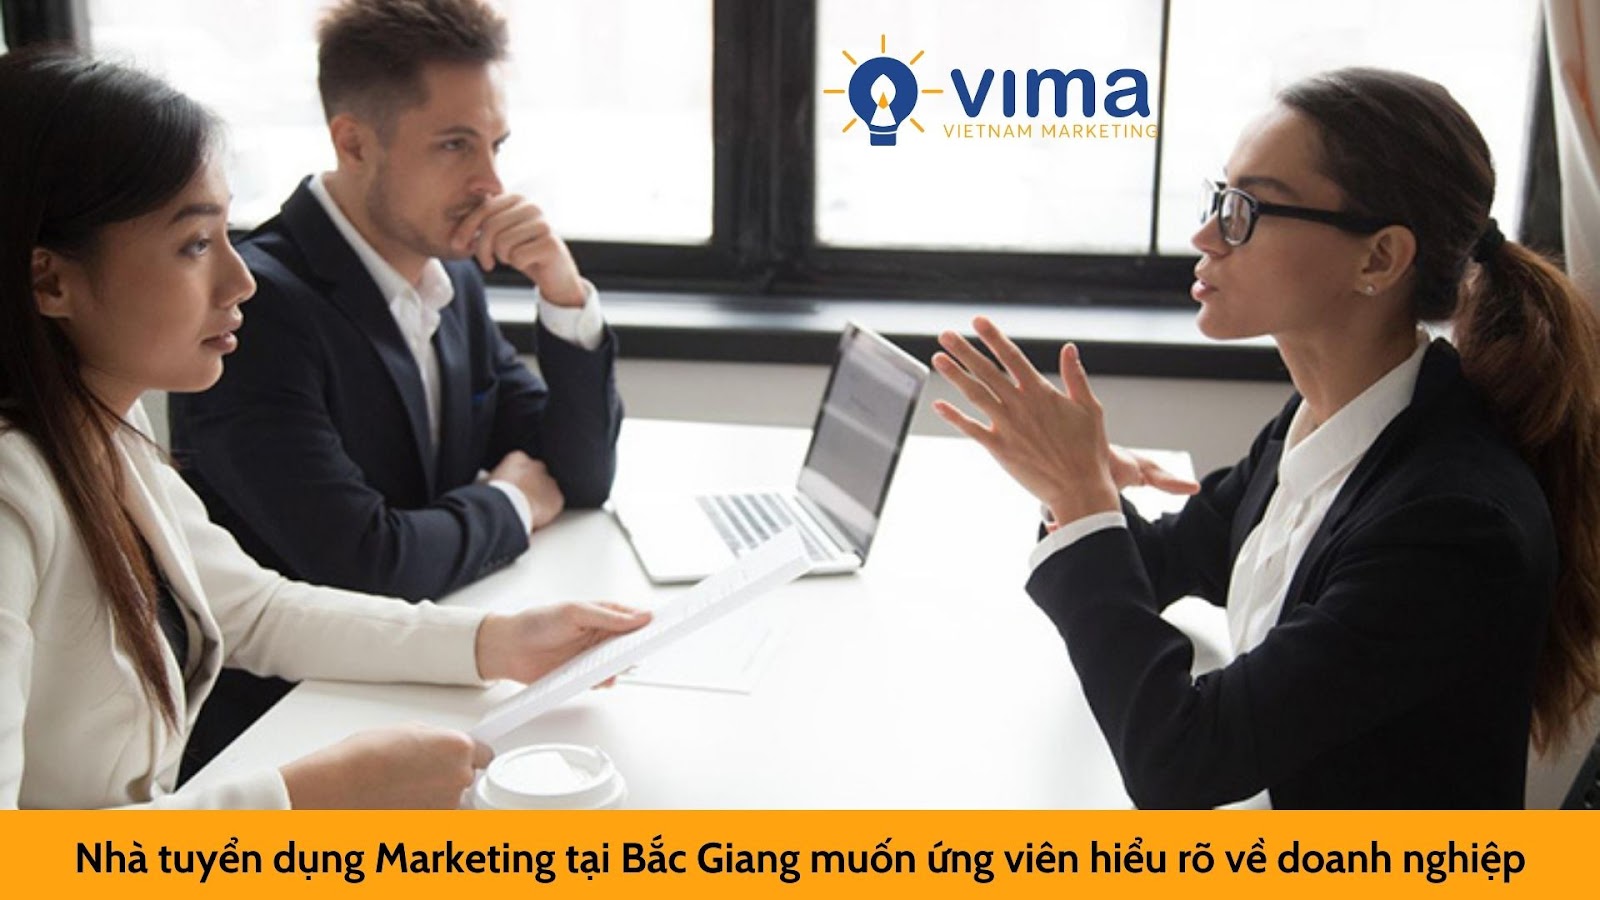 Nhà tuyển dụng Marketing tại Bắc Giang muốn ứng viên hiểu rõ về doanh nghiệp